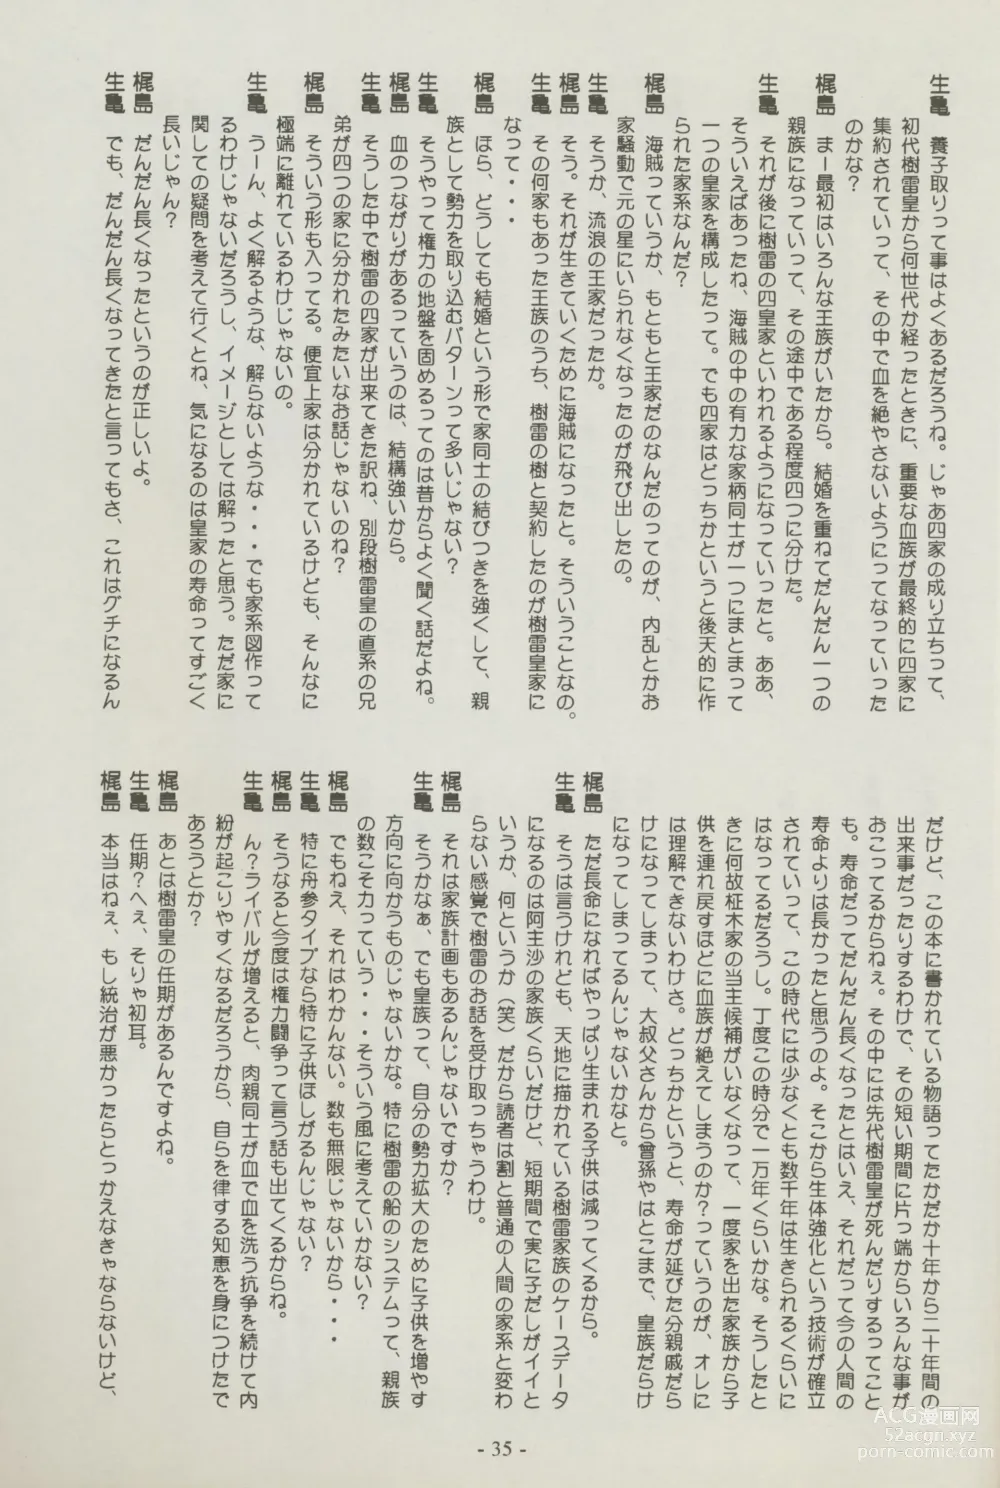 Page 35 of doujinshi Shuppanroku